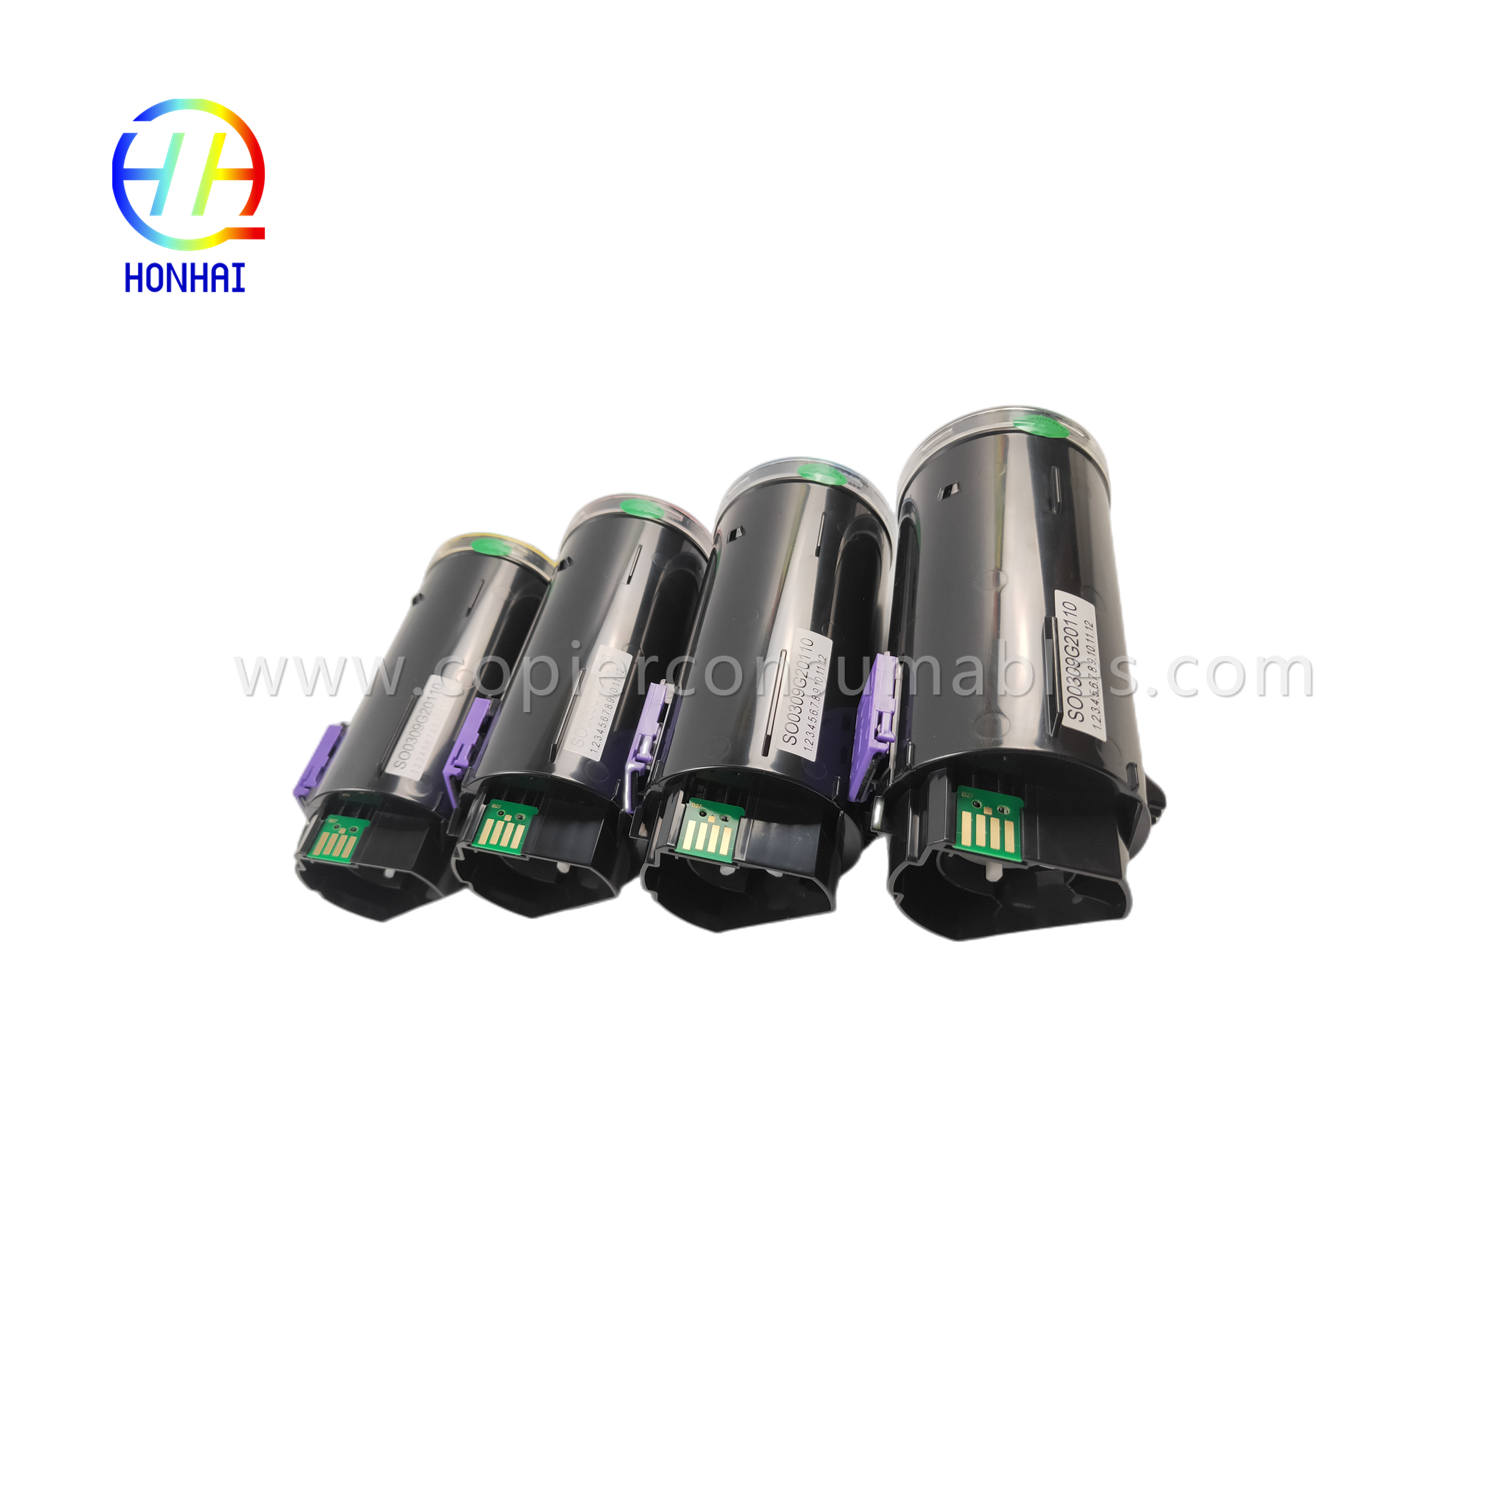 https://www.copierconsumables.com/toner-cartridge-set-imported-powder-for-ricoh-imc530-imc530f-imc530fb-ref-418240-ref-418241-ref-418242-ref-418243-pro